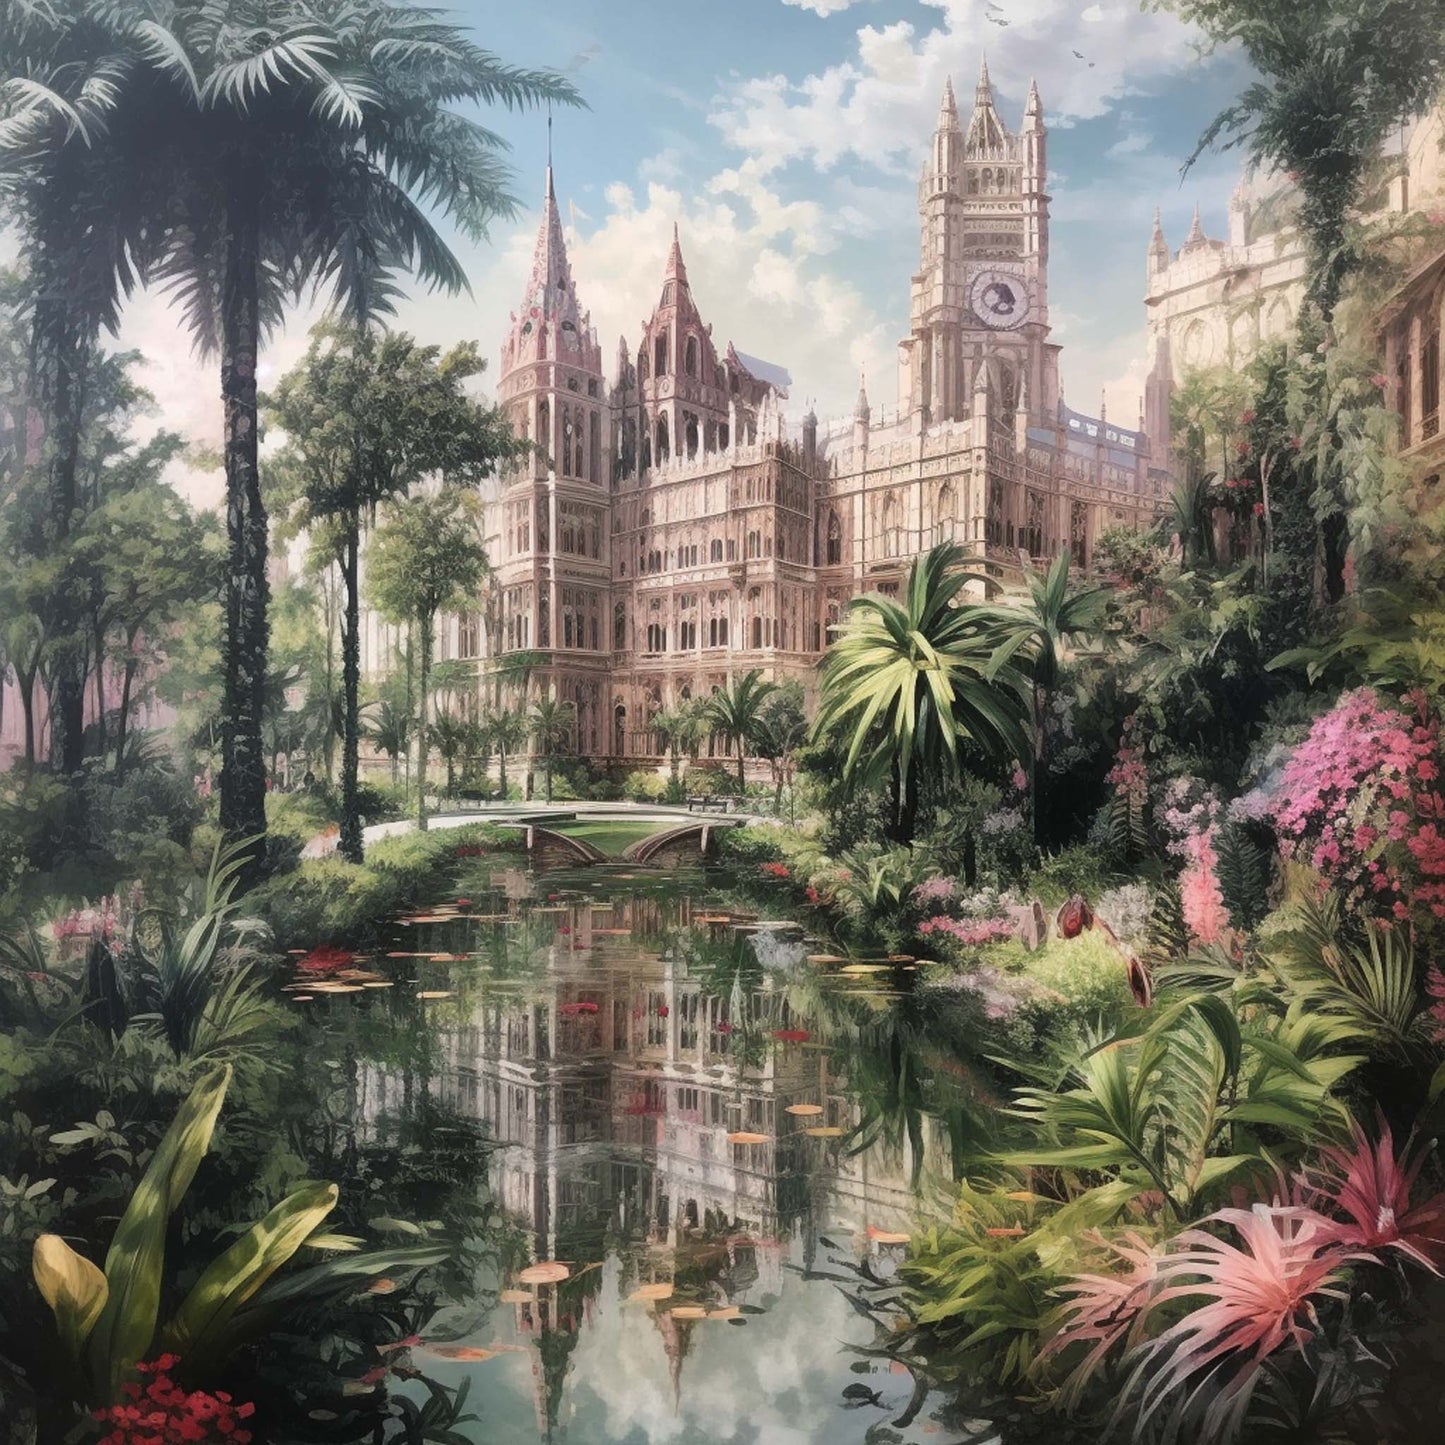 London Westminster Palace - Wandbild in der Stilrichtung Urban Jungle